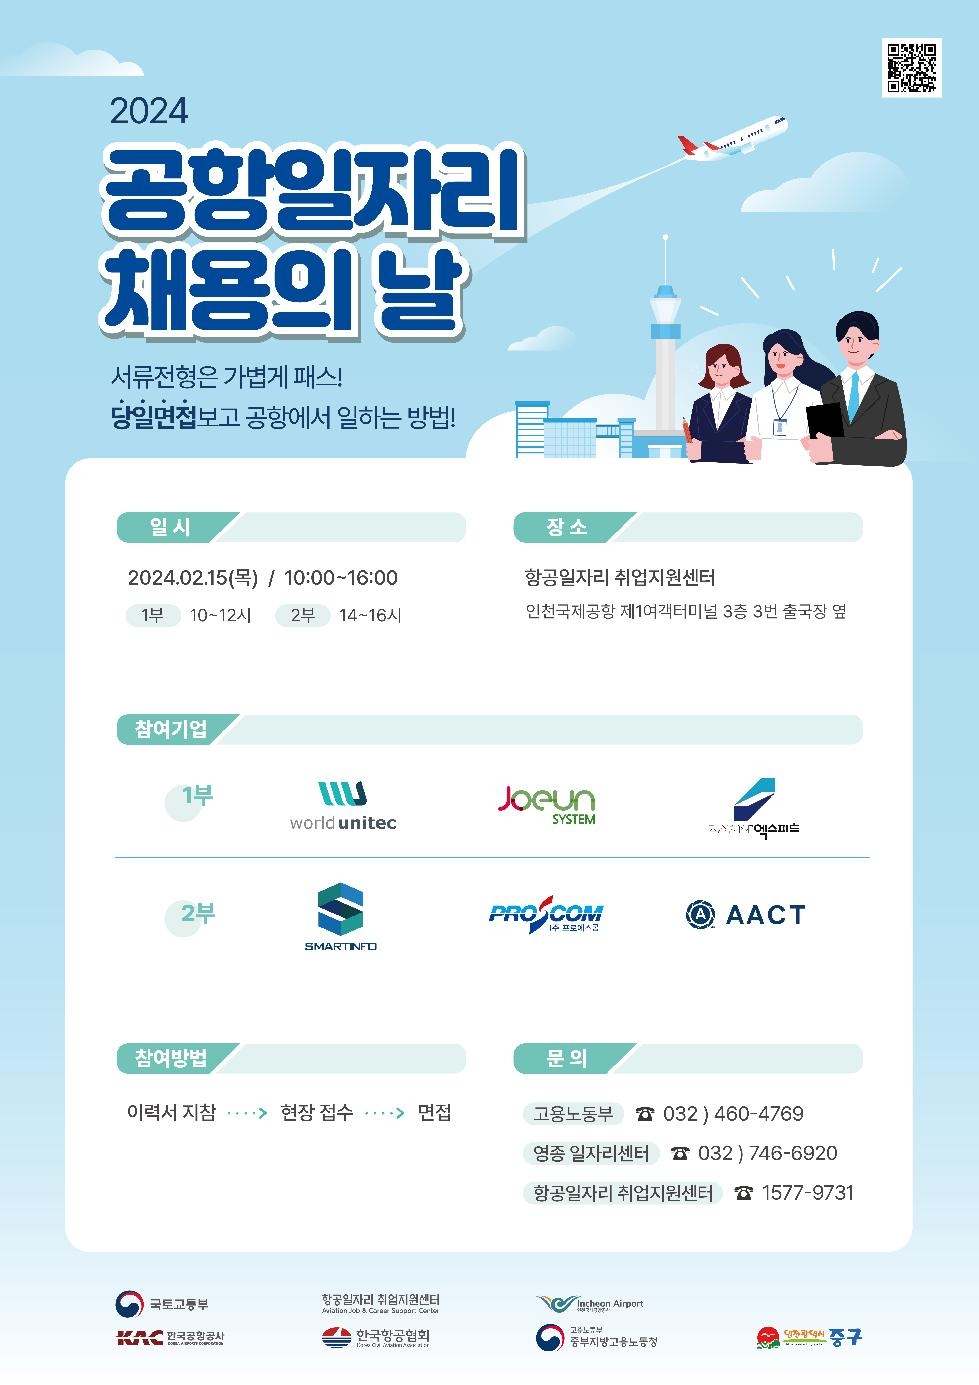 인천 중구, 6개 기업과 함께 올해 첫 ‘공항 일자리 채용의 날’ 개최